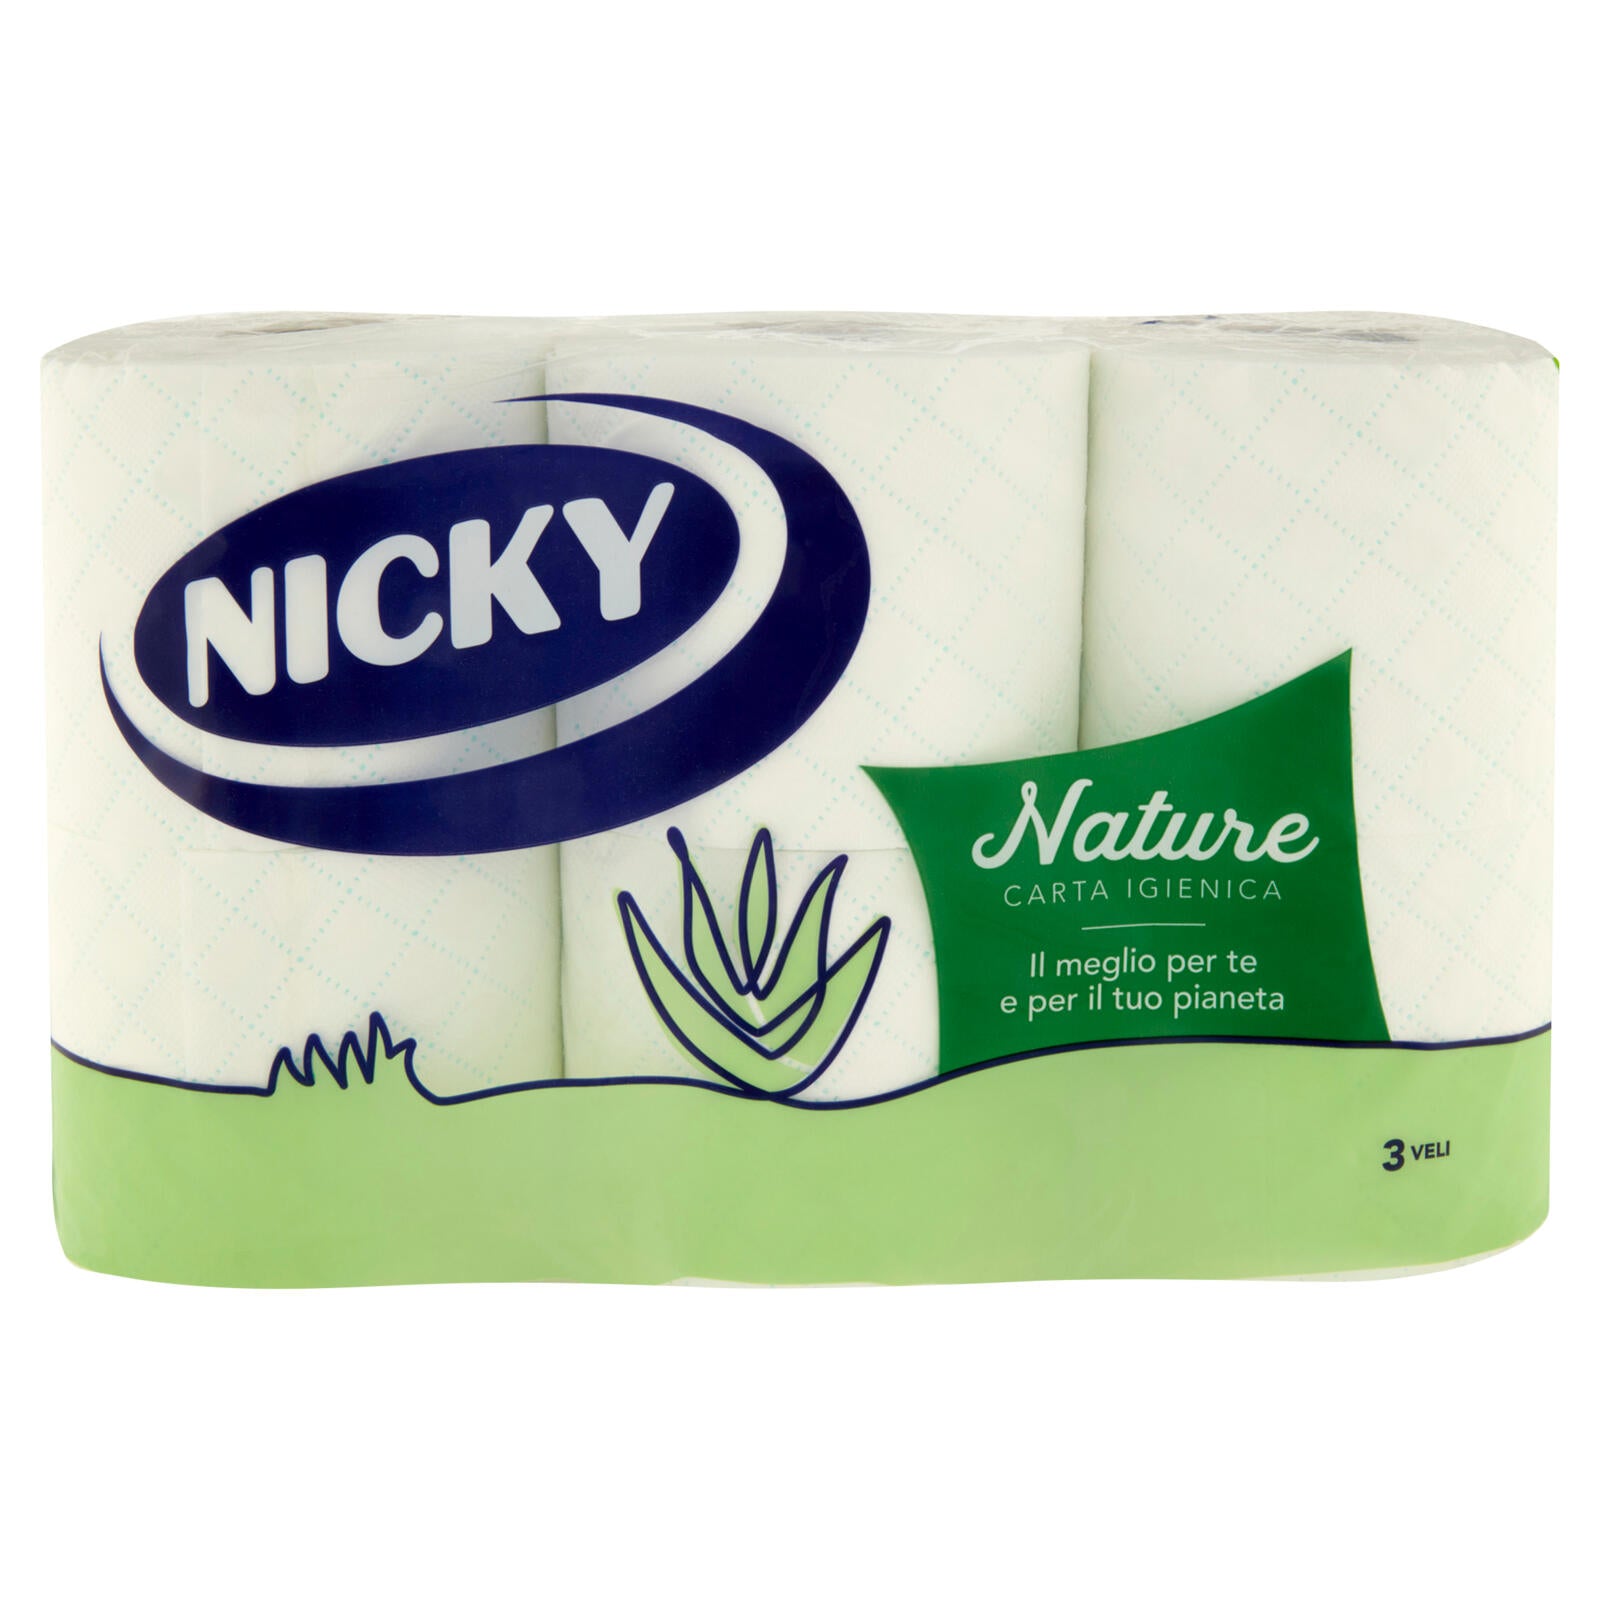 Nicky Nature Carta Igienica 6 pz ->